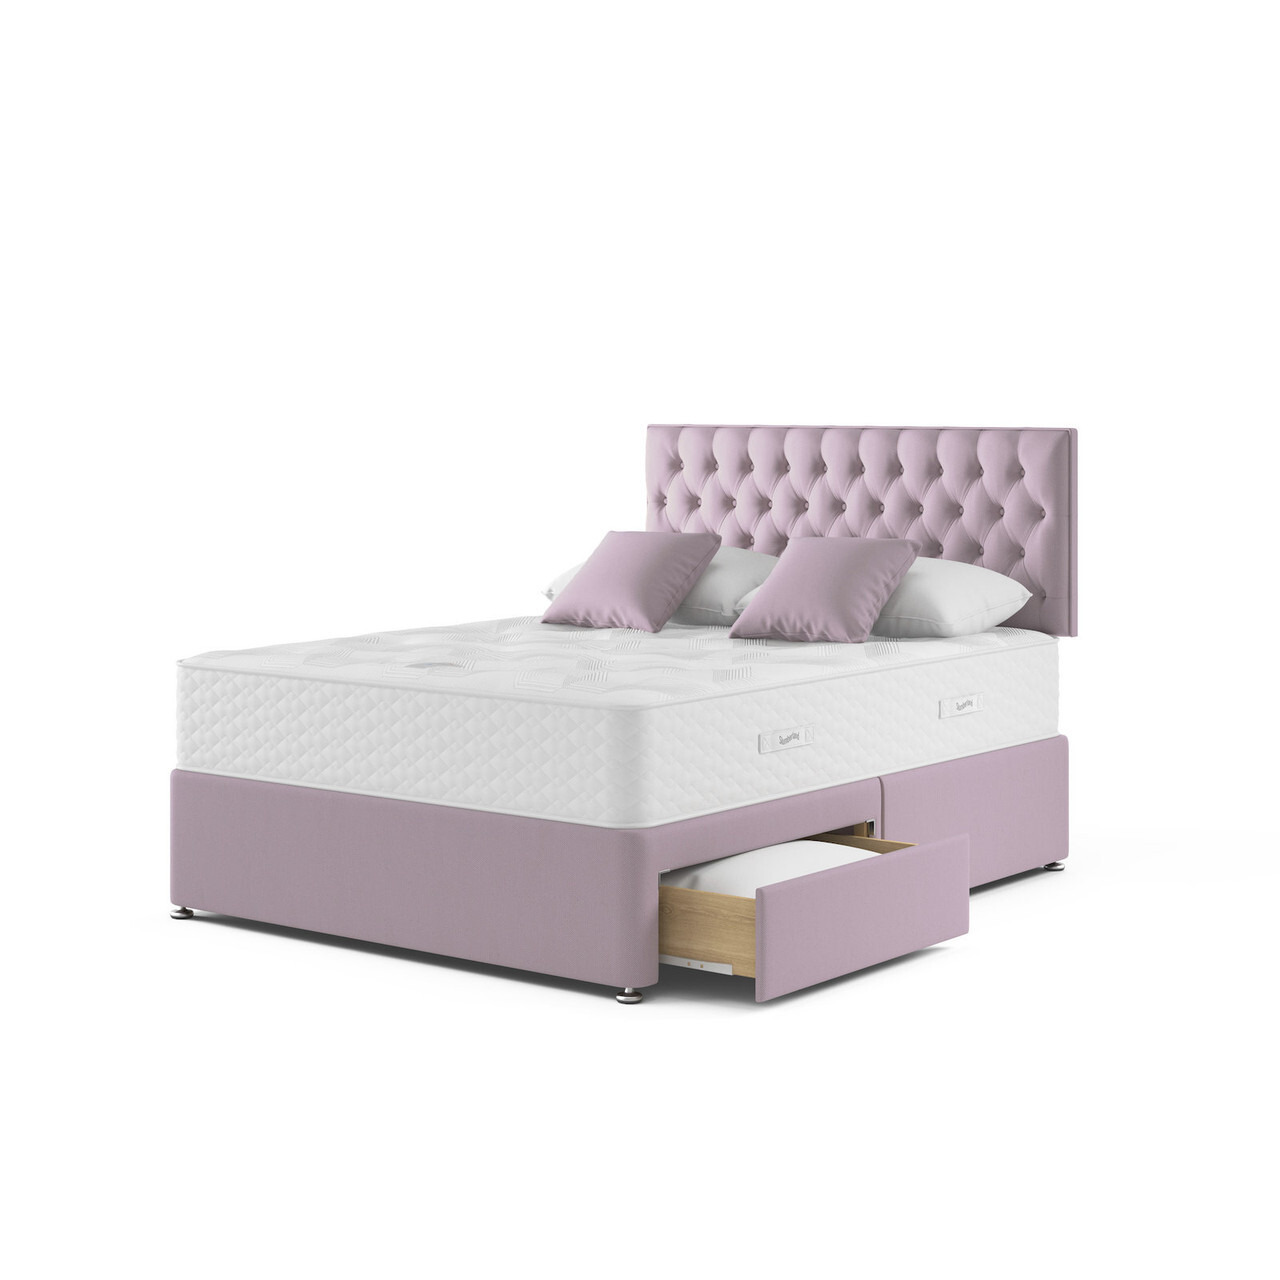 Slumberland Eco Solutions 1000 Divan Bed Set - image 1